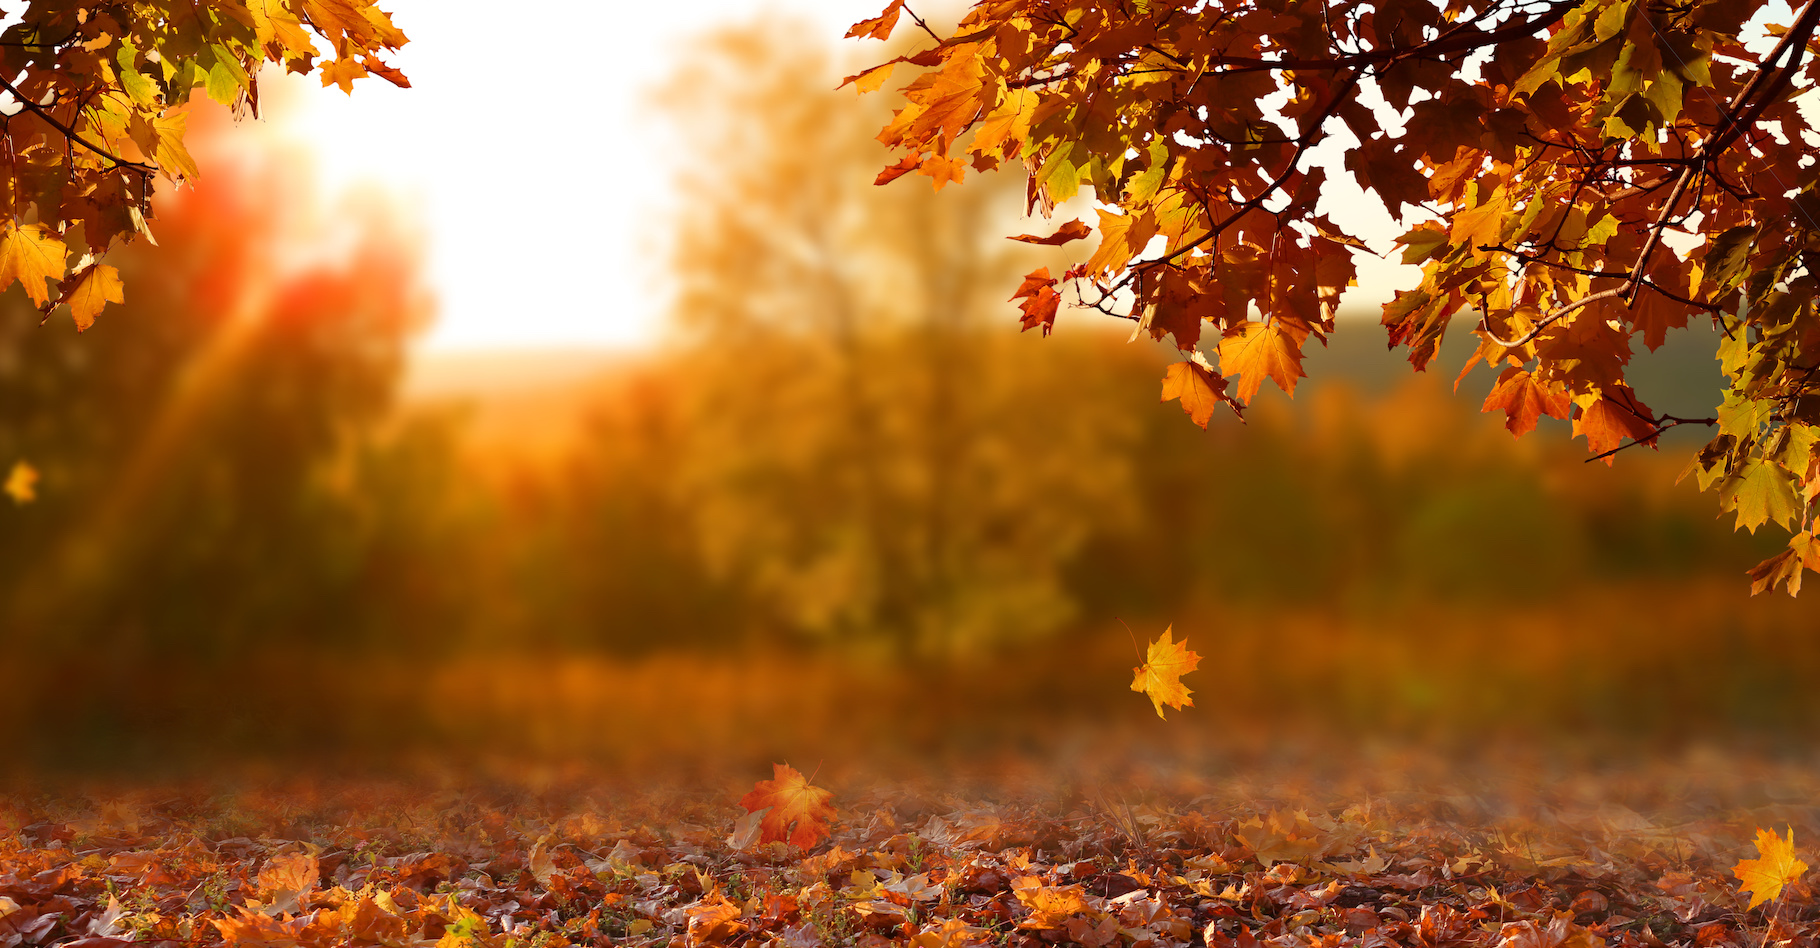 Avec le réchauffement climatique, les feuilles vont tomber plus tôt et plus longtemps de nos arbres. © Lilya, Adobe Stock